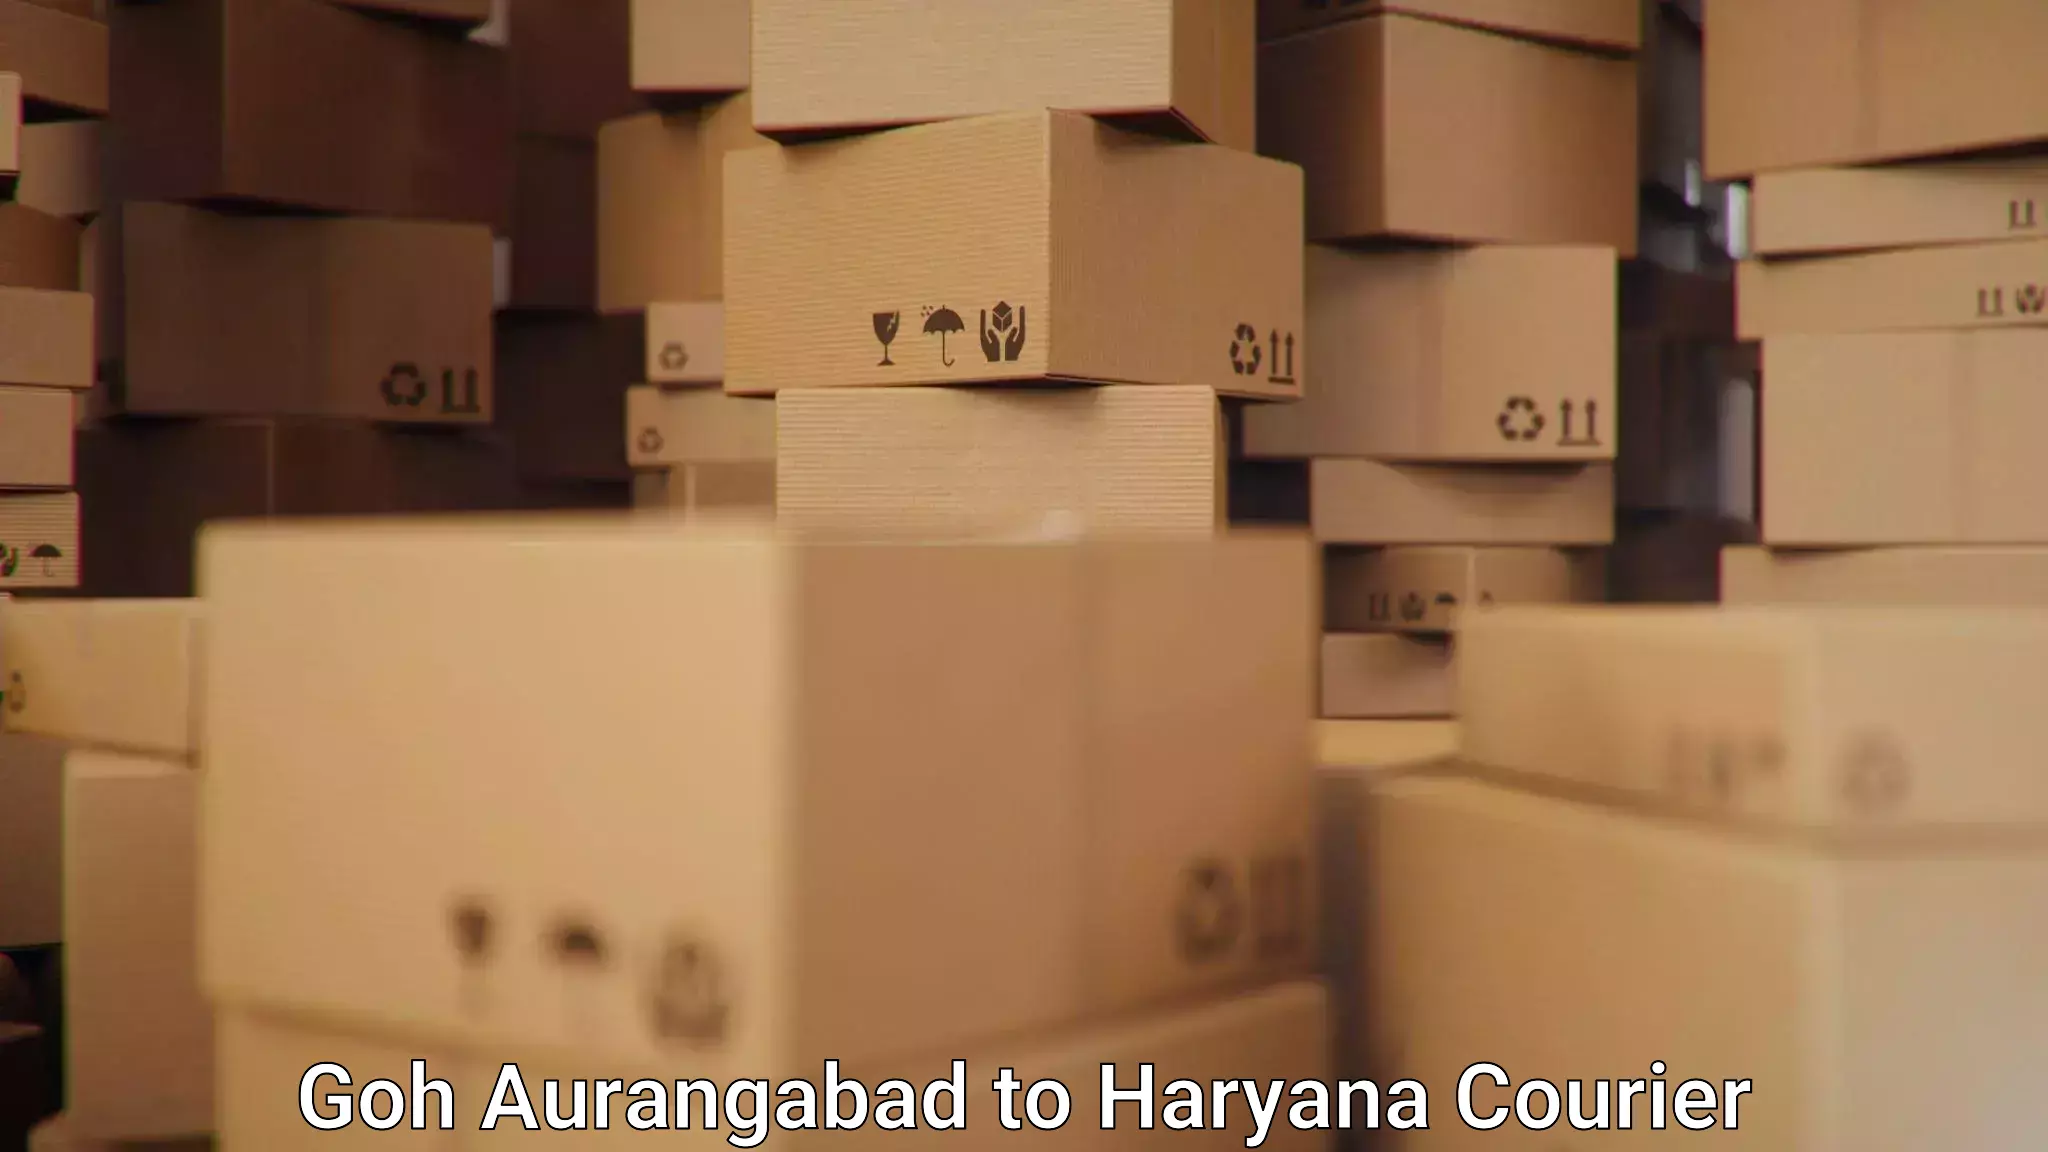 Package forwarding Goh Aurangabad to Gurgaon